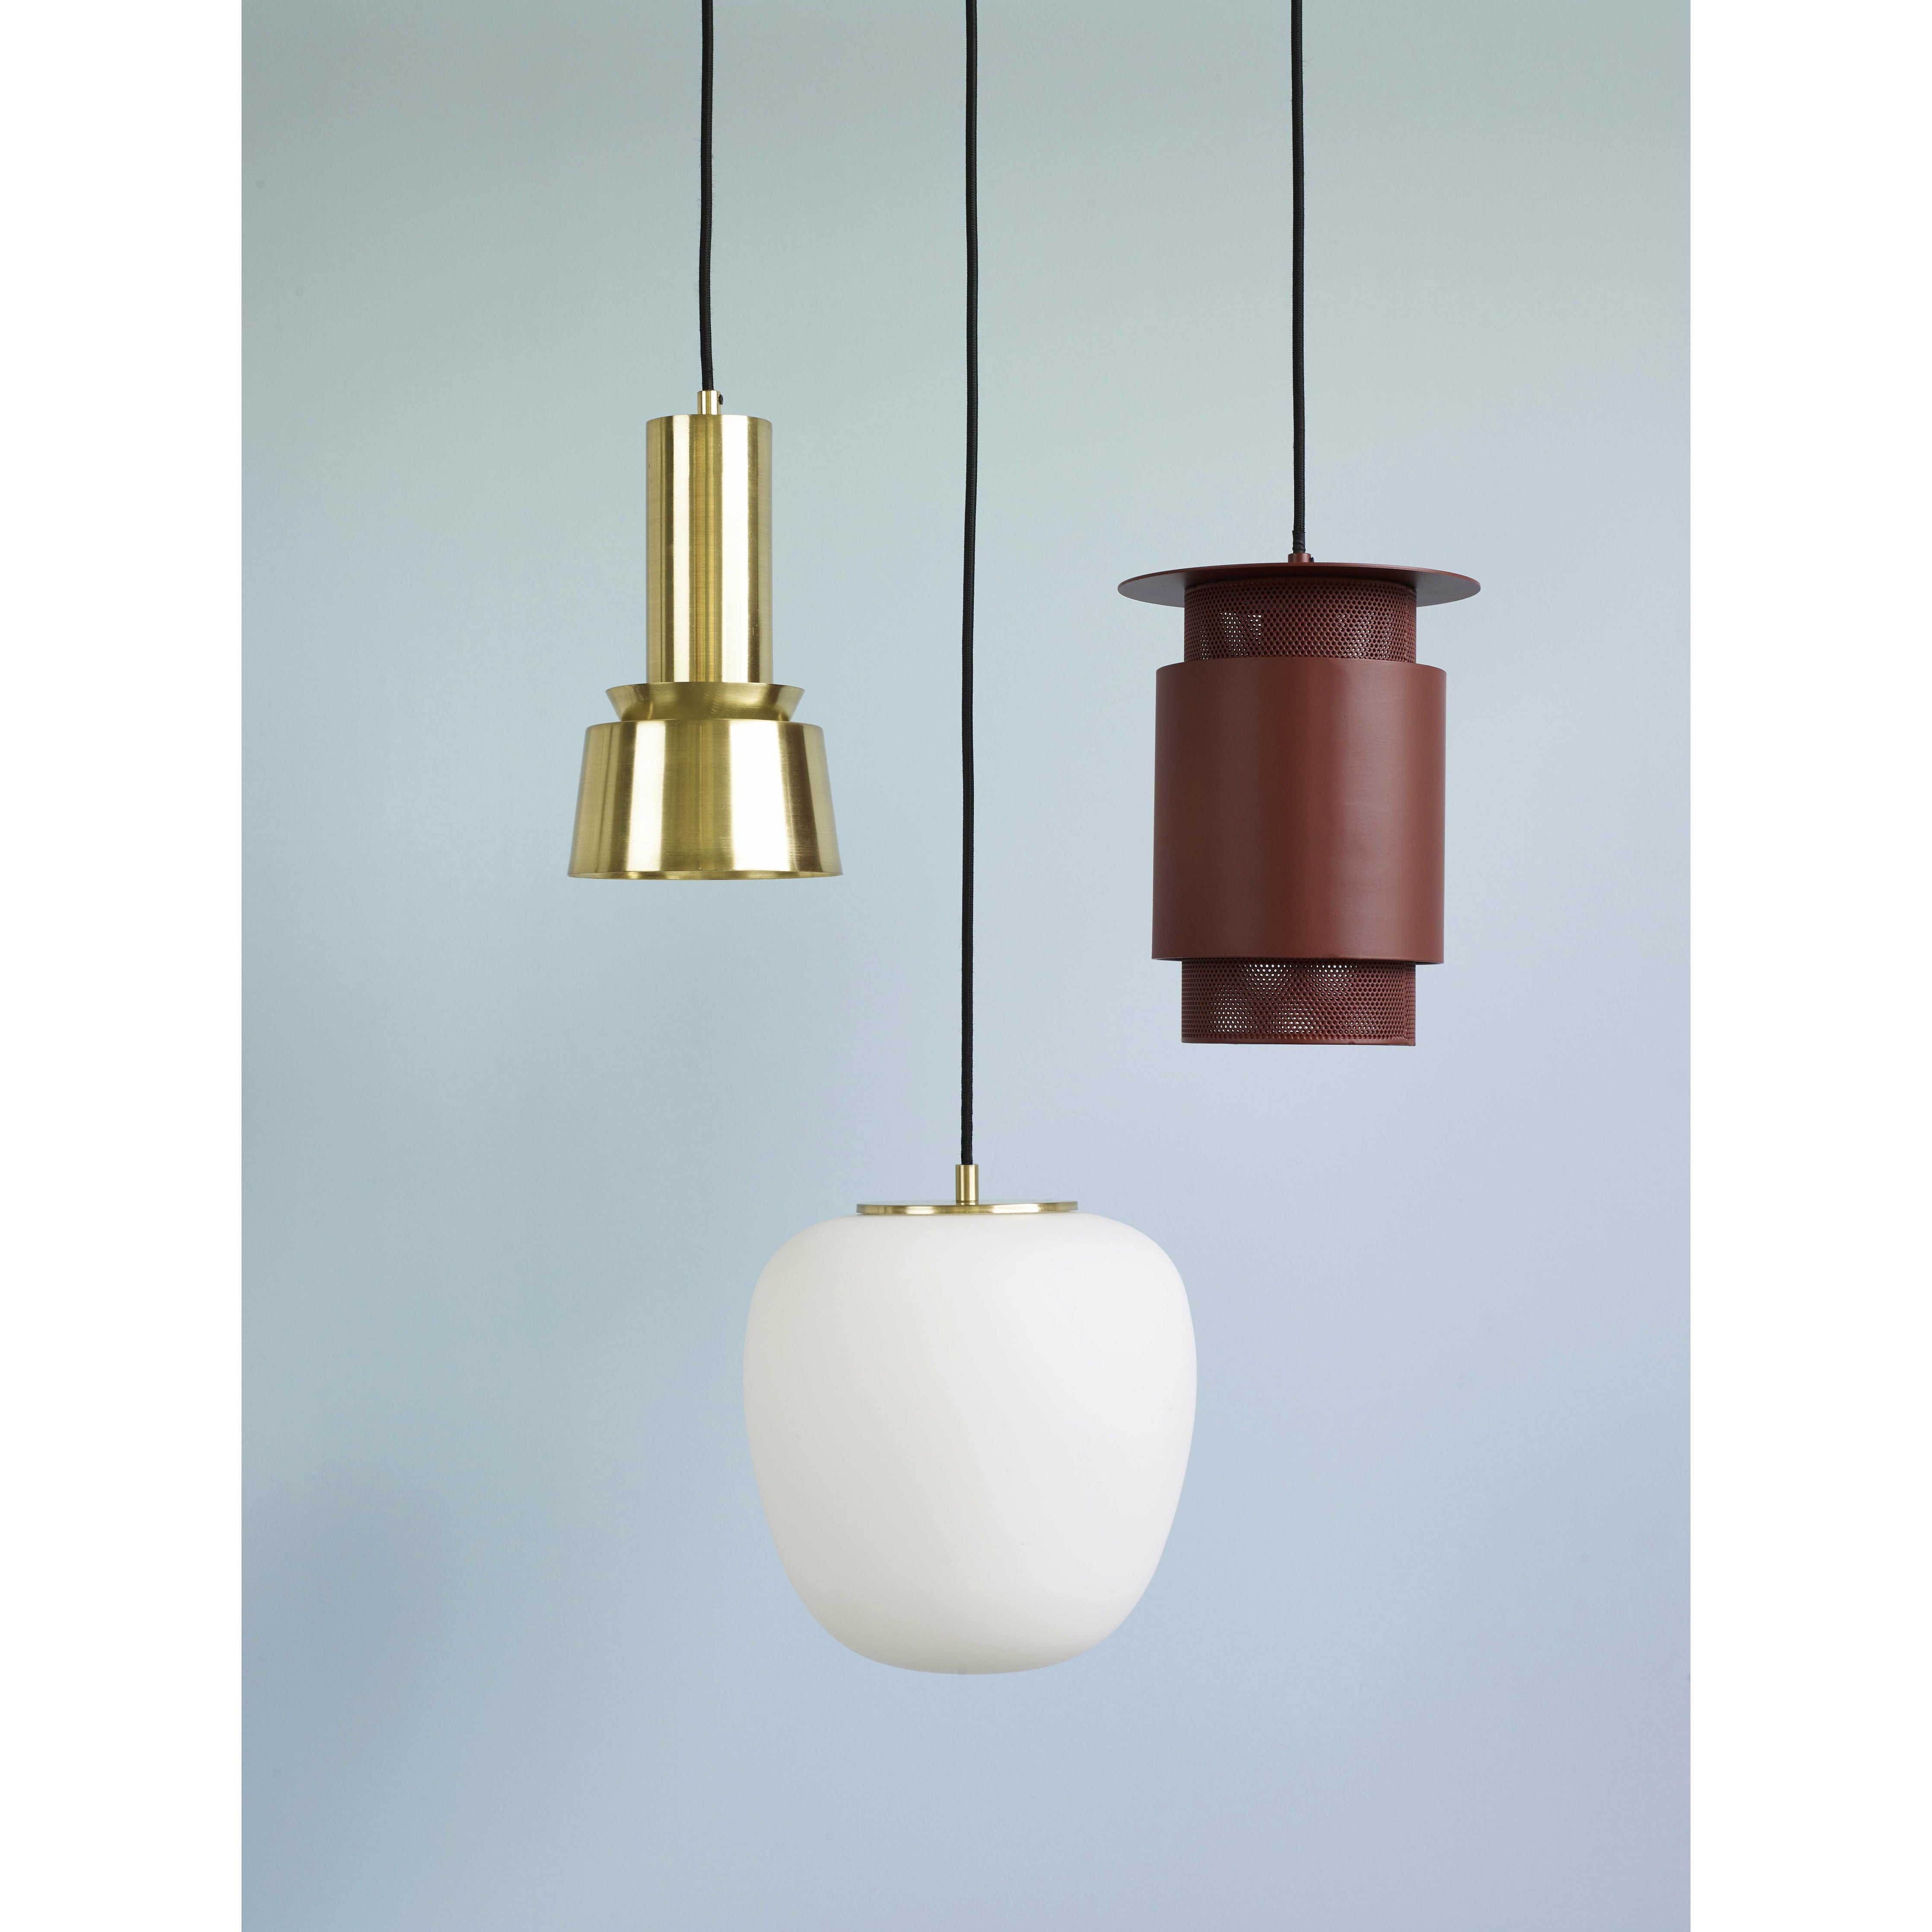 Hübsch Muse Lamp Glass White/Brass, 25x36 cm